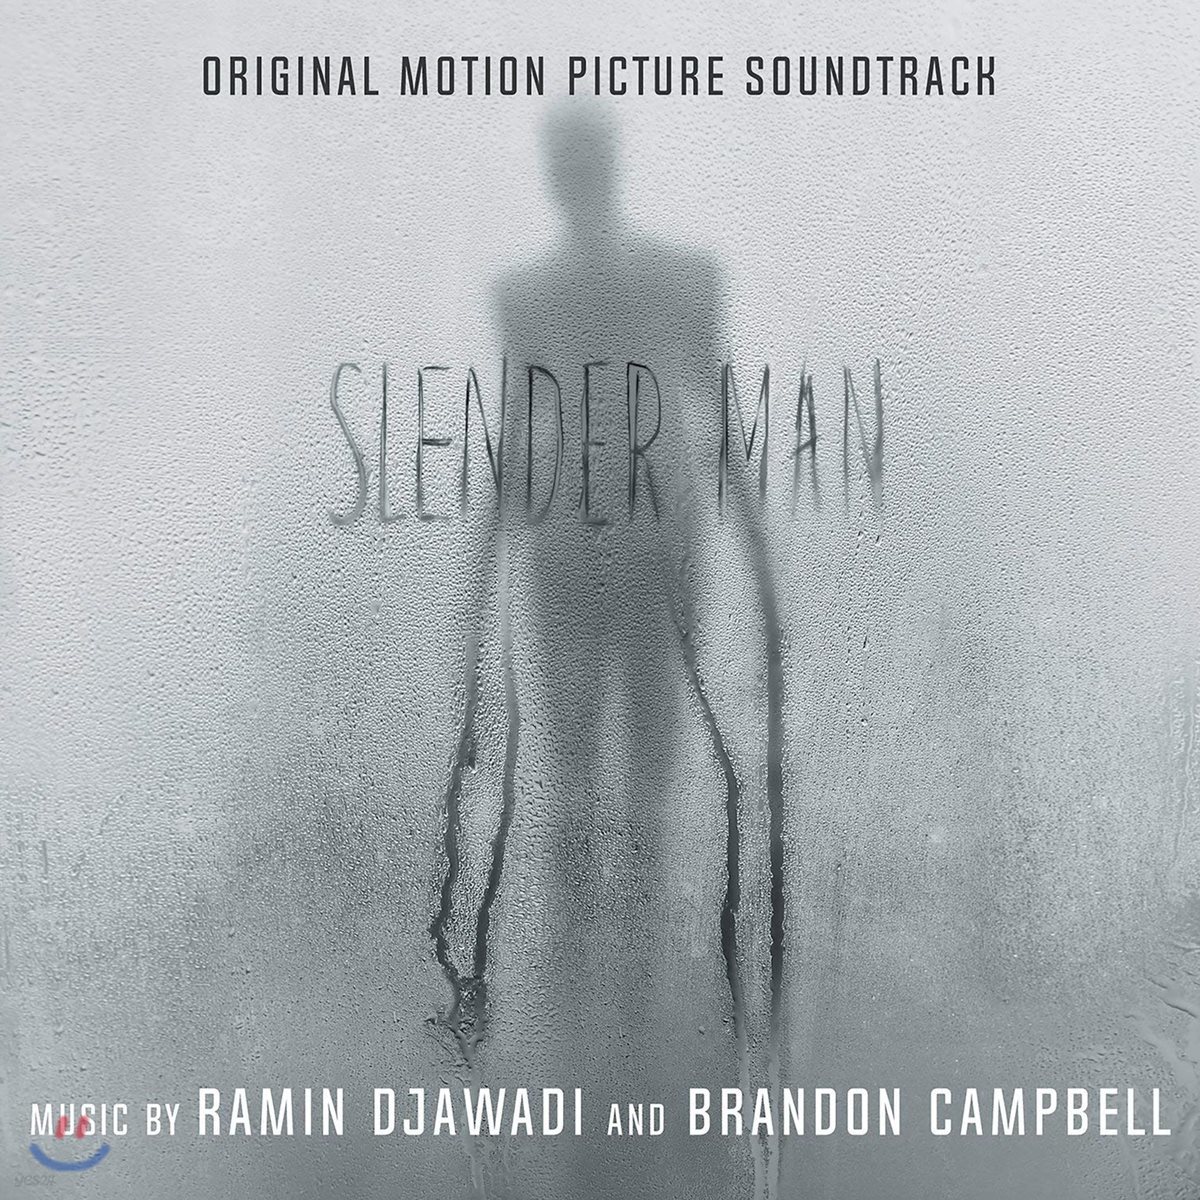 슬렌더 맨 영화음악 (Slender Man OST)